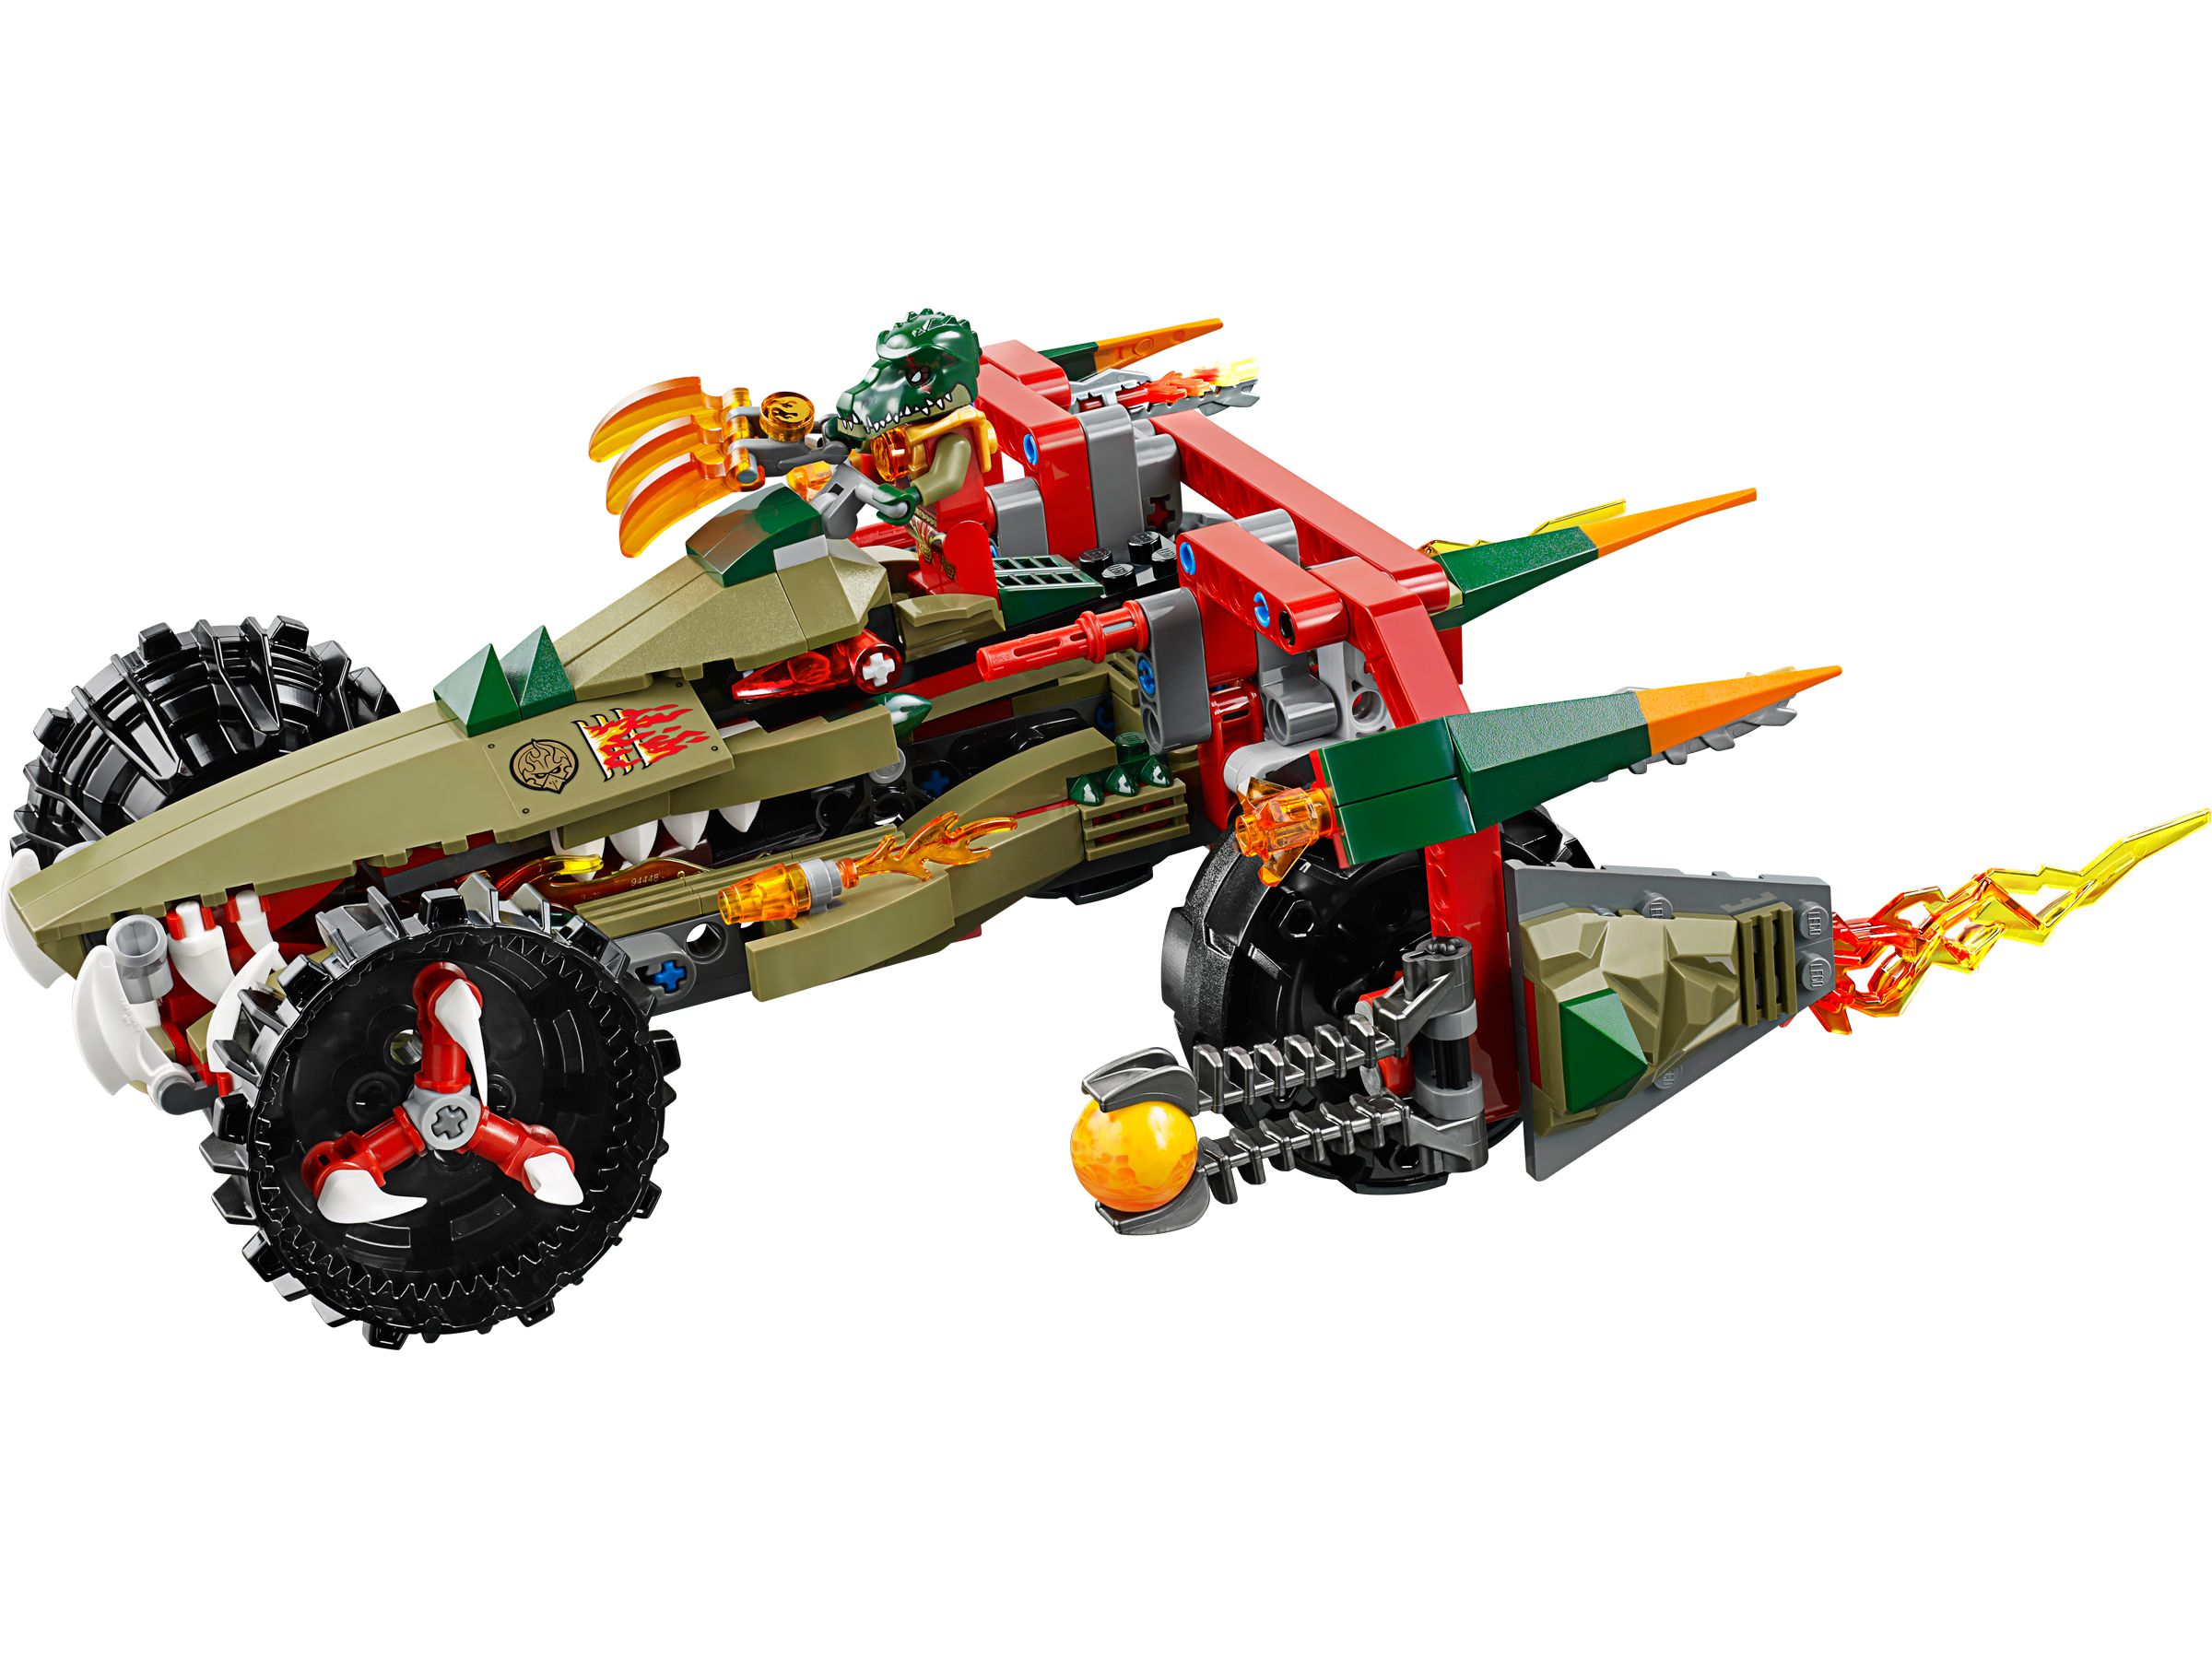 LEGO Legends Of Chima 70135 Craggers Feuer-Striker LEGO_70135_alt2.jpg